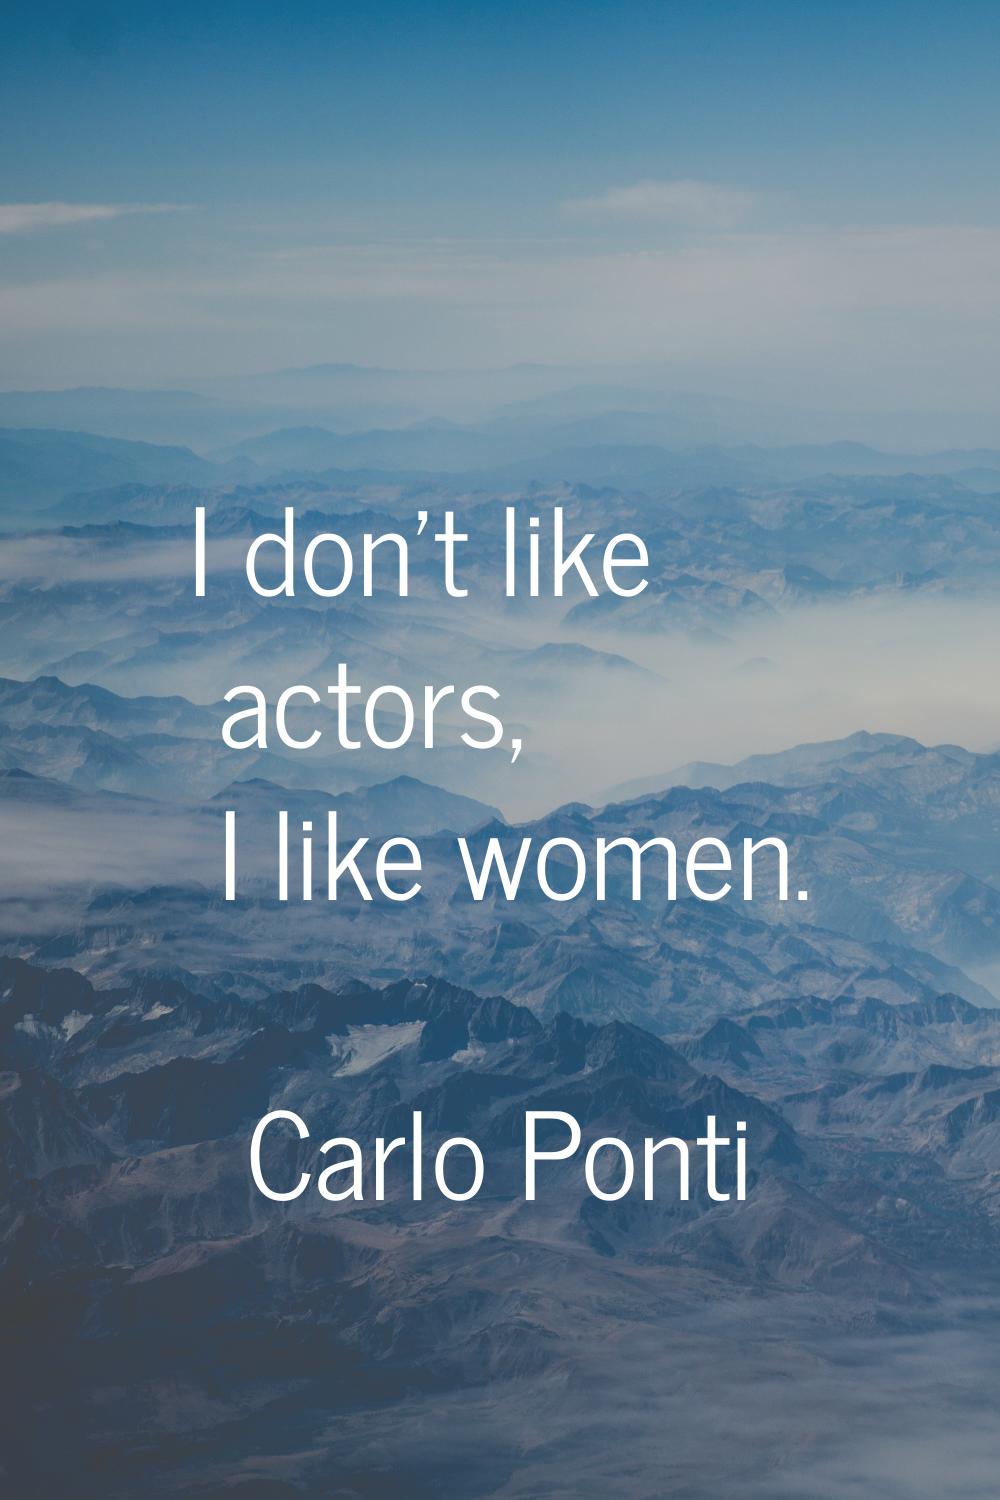 I don't like actors, I like women.